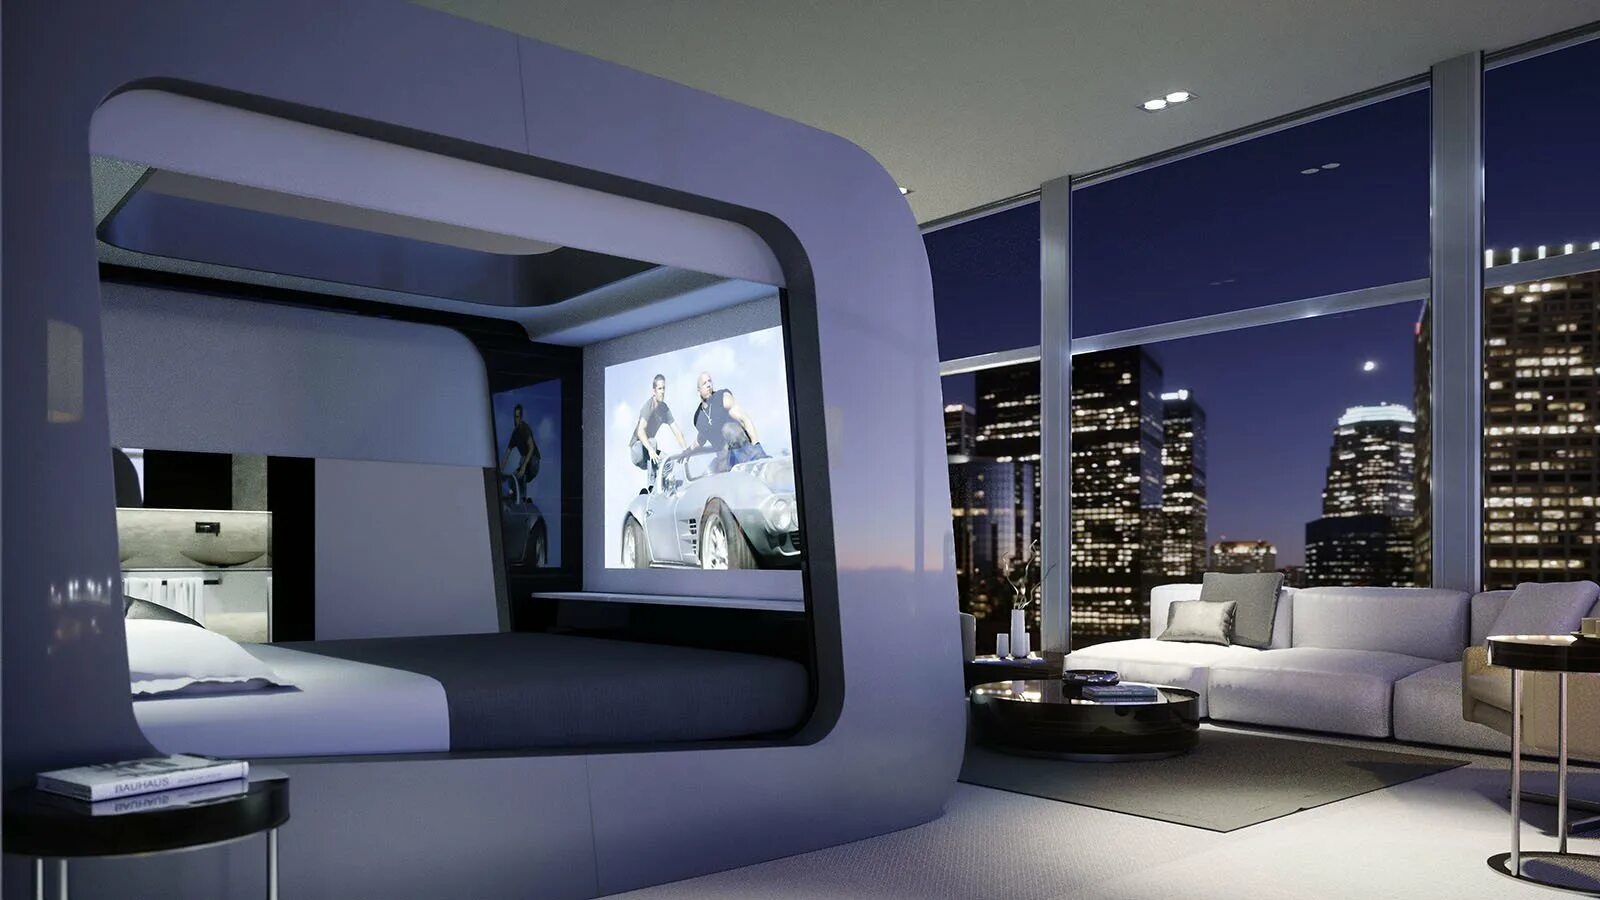 Кровать Ultimate Luxury Bed. Hican Smart Bed. Комната в стиле будущего. Современная комната. Был телефон и комната была